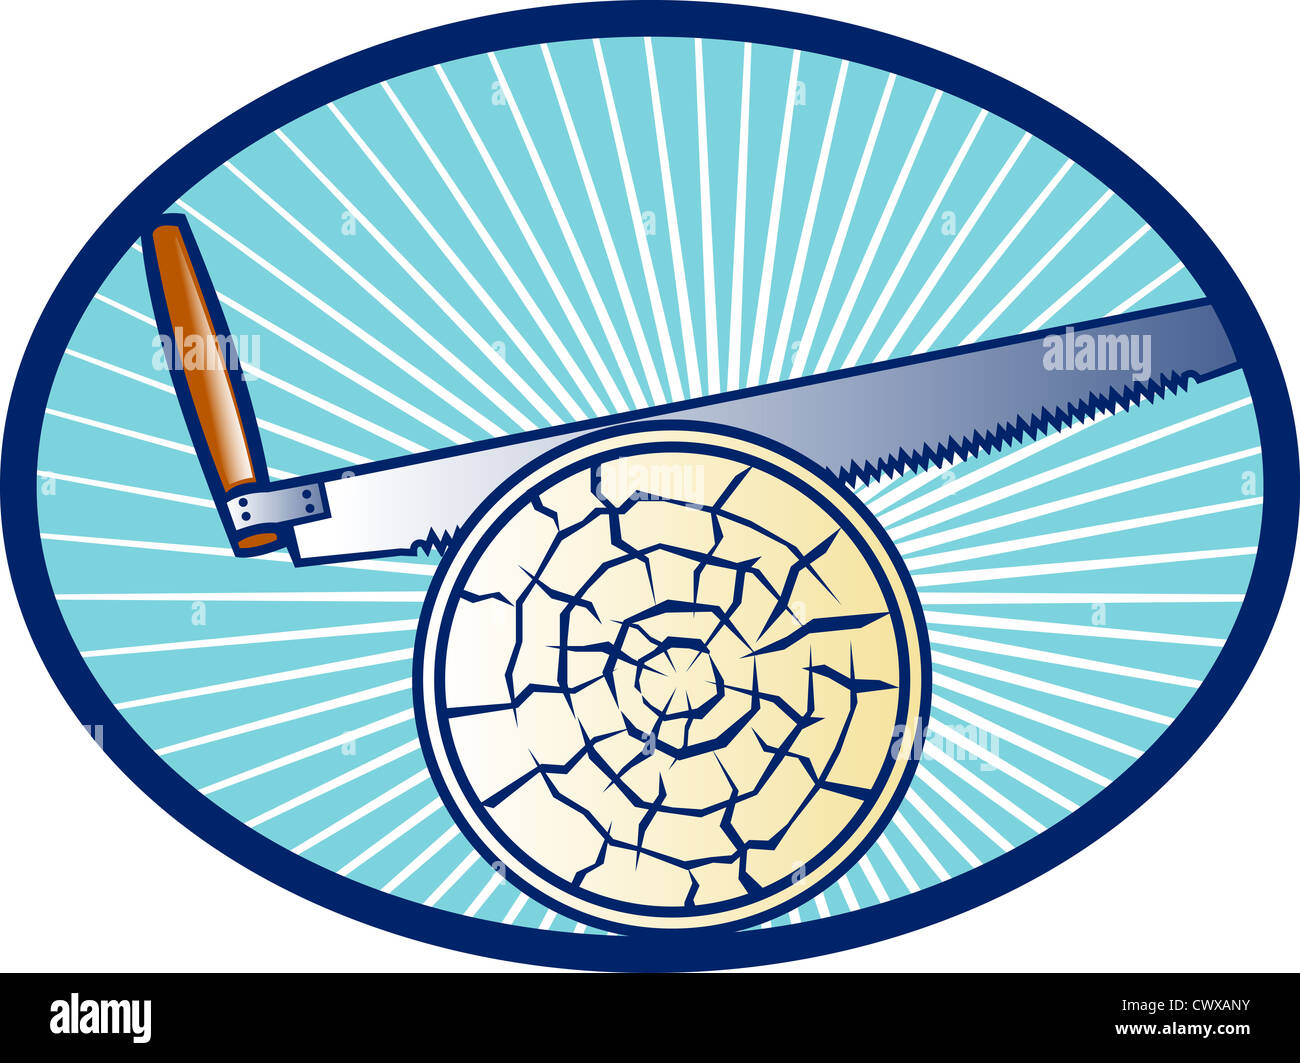 Retro illustration d'un cross-cut scie à main journal de coupe de bois situé à l'intérieur de l'ellipse ovale avec la solarisation. Banque D'Images